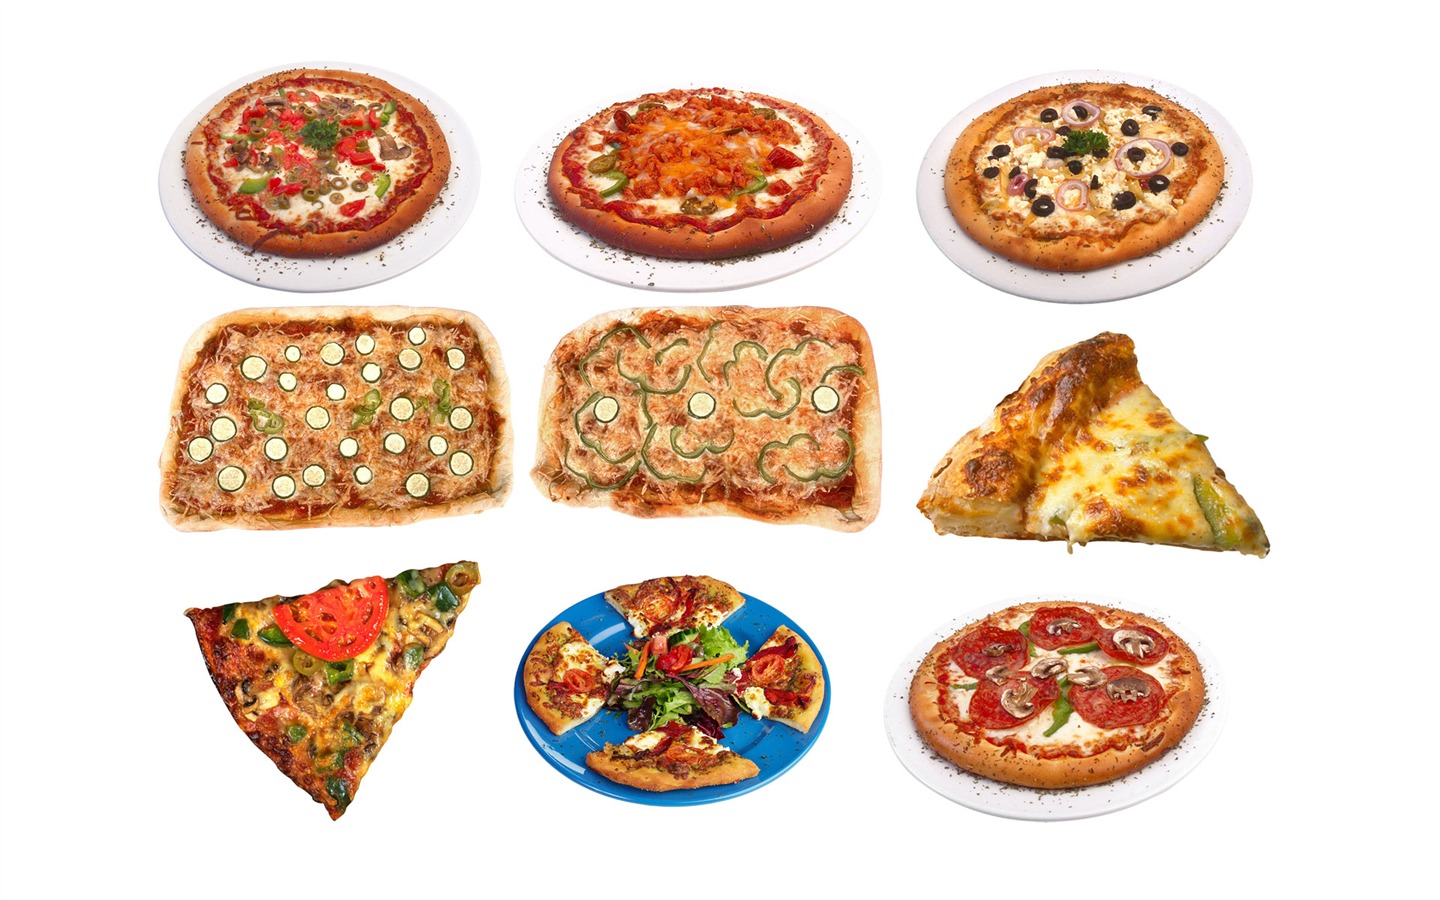 Fondos de pizzerías de Alimentos (3) #17 - 1440x900